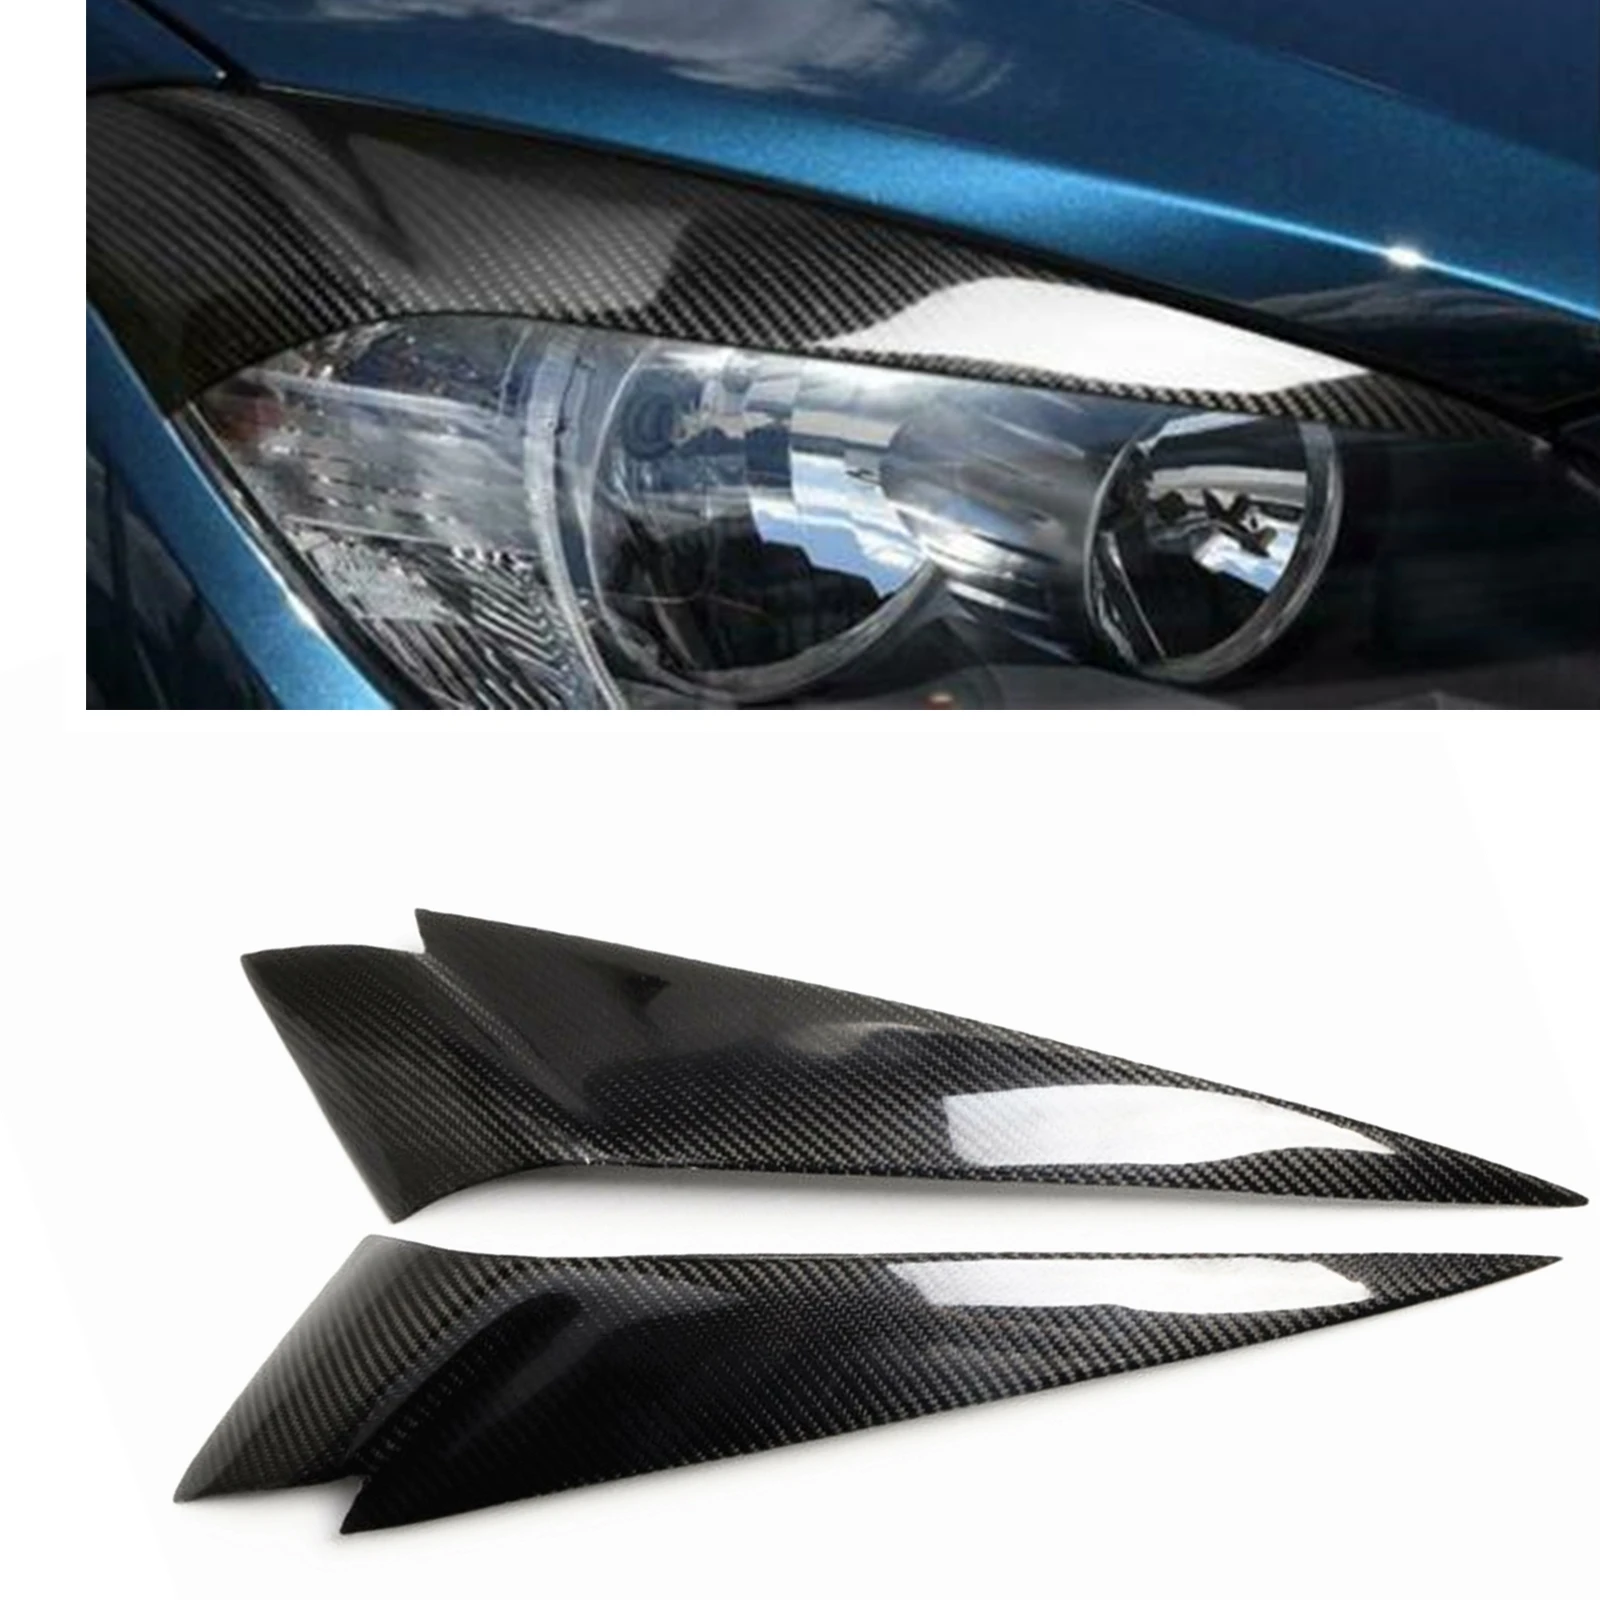 

Car Headlight Eyelid Trim Front Head Light Eyebrow Cover Brow Sticker For BMW X1 E84 28i 35i Estate 2009-2015